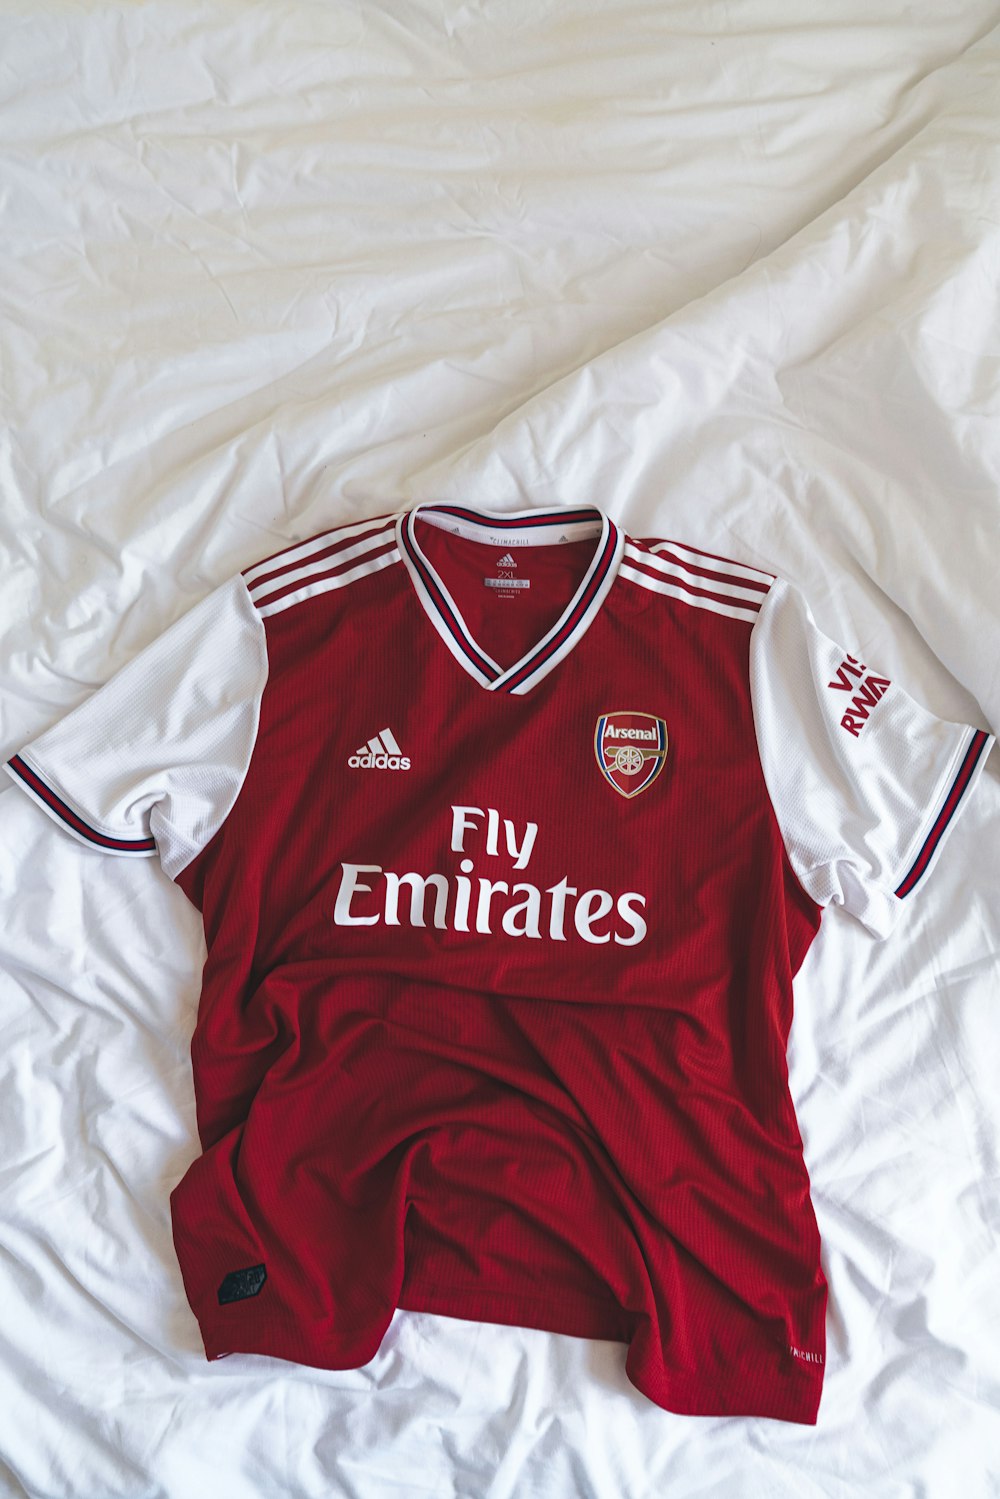 red and white Adidas Fly Emirates shirt photo – Free Arsenal Image on  Unsplash